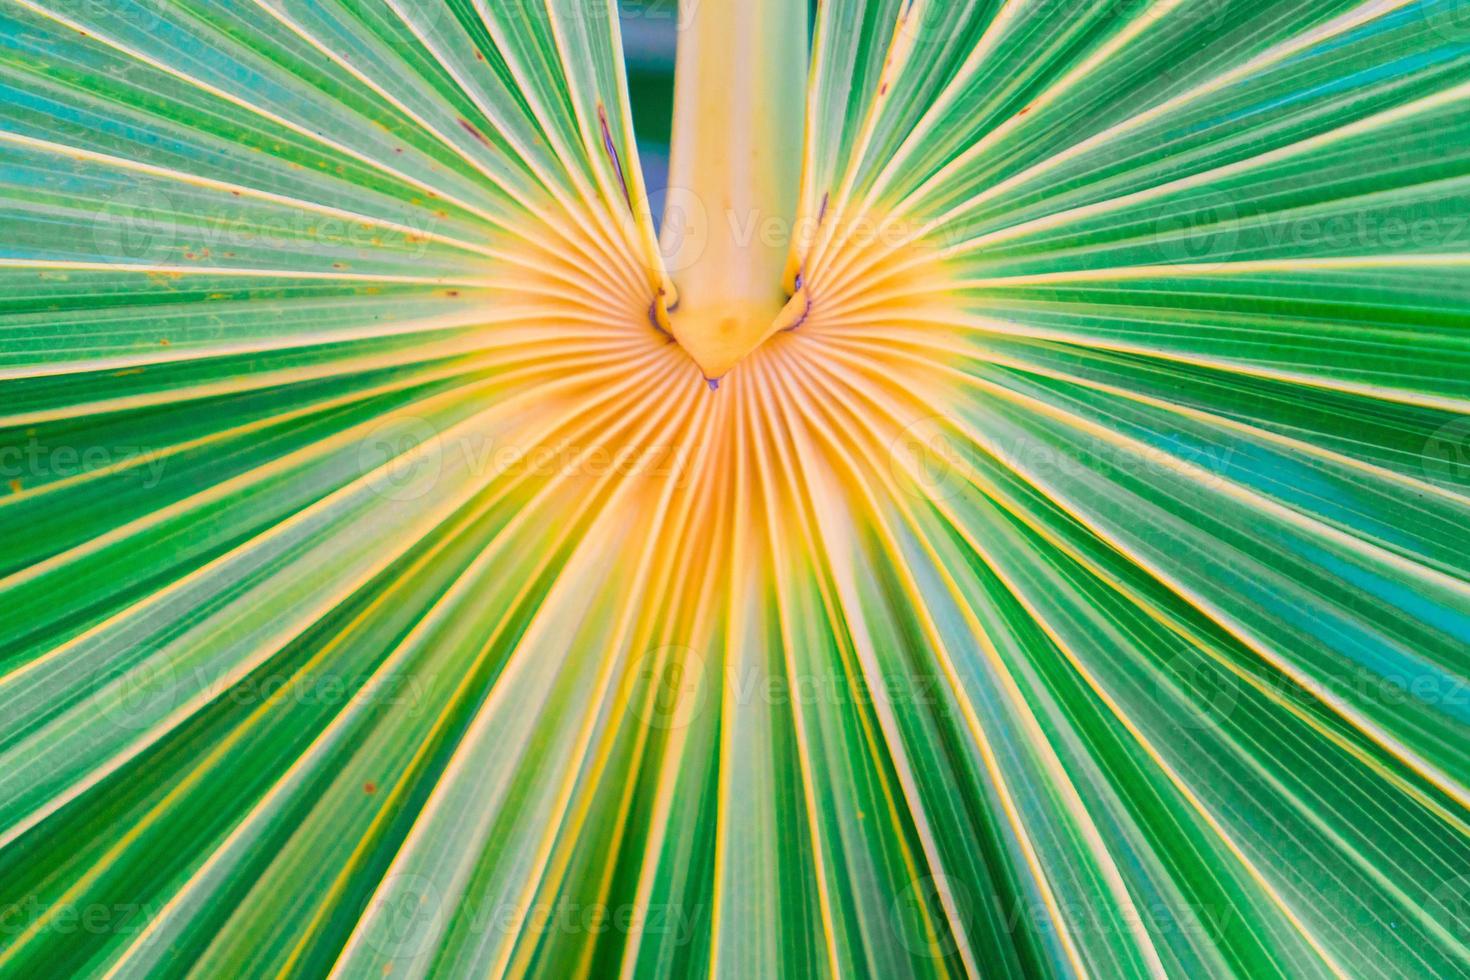 Linien und Texturen von grünen Palmblättern auf der exorischen Insel foto